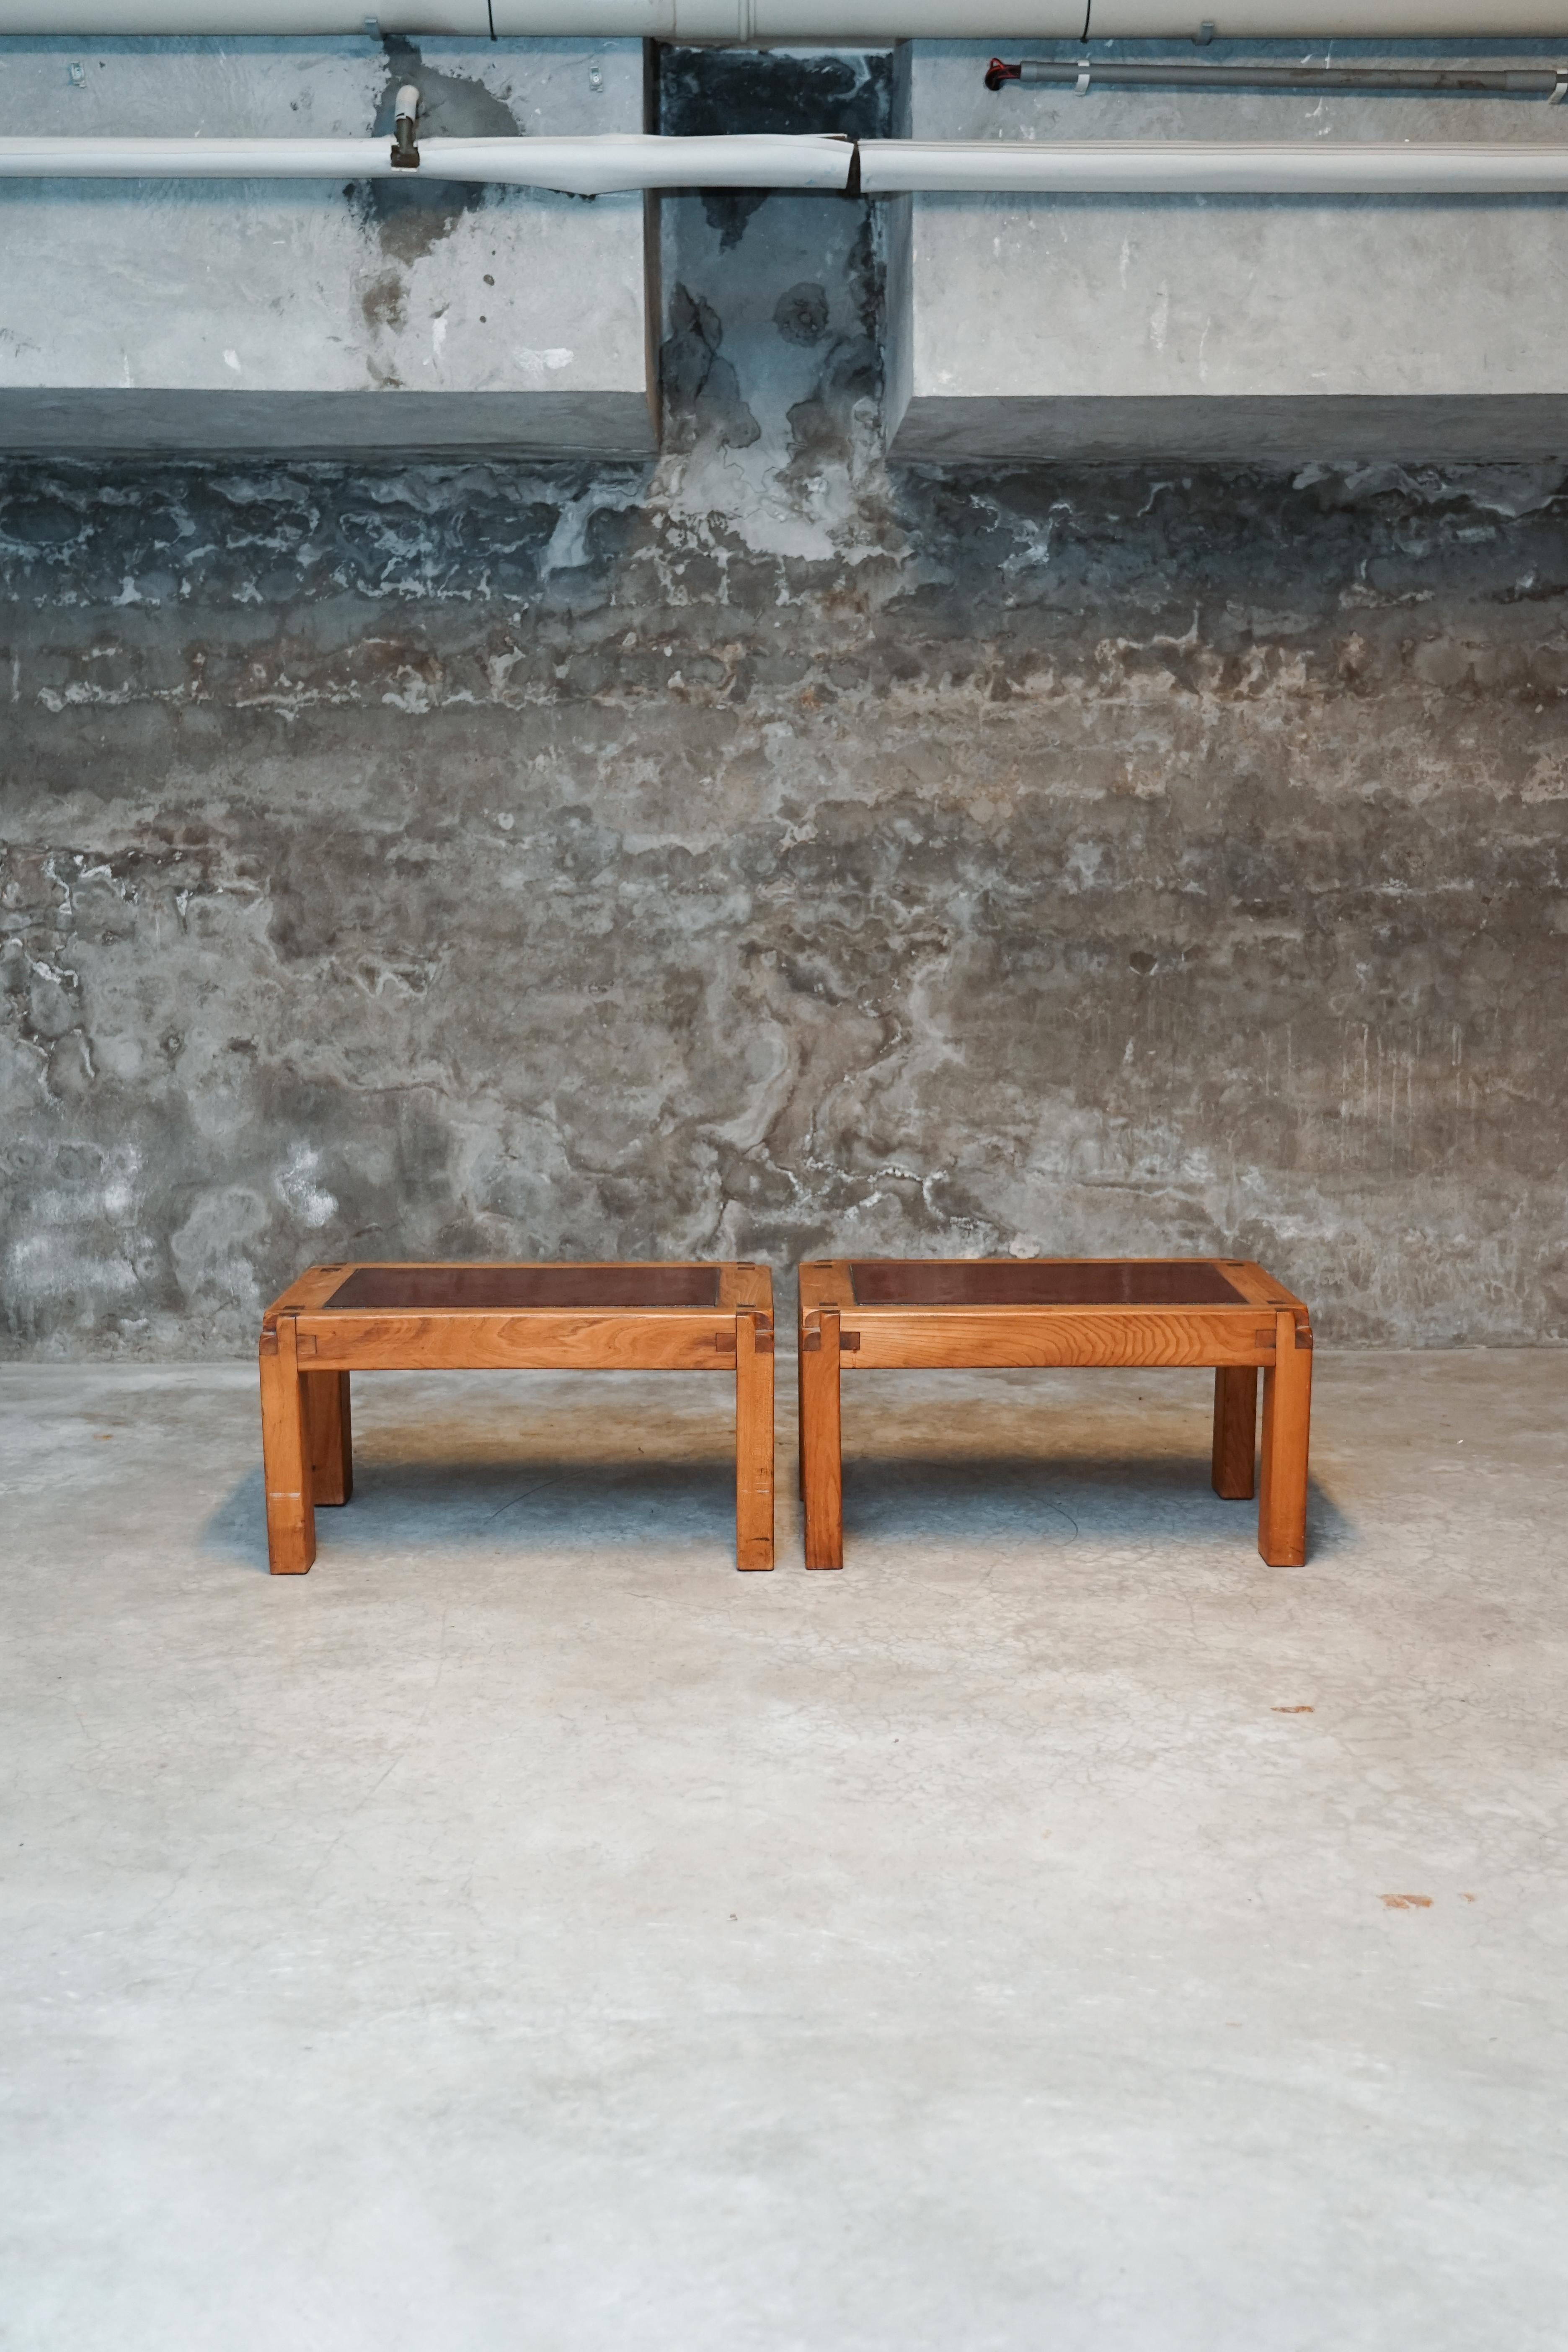 Pierre Chapo est un créateur légendaire de meubles en bois. 
Son héritage perdure encore aujourd'hui, car ces pièces sont toujours très recherchées et très élégantes !